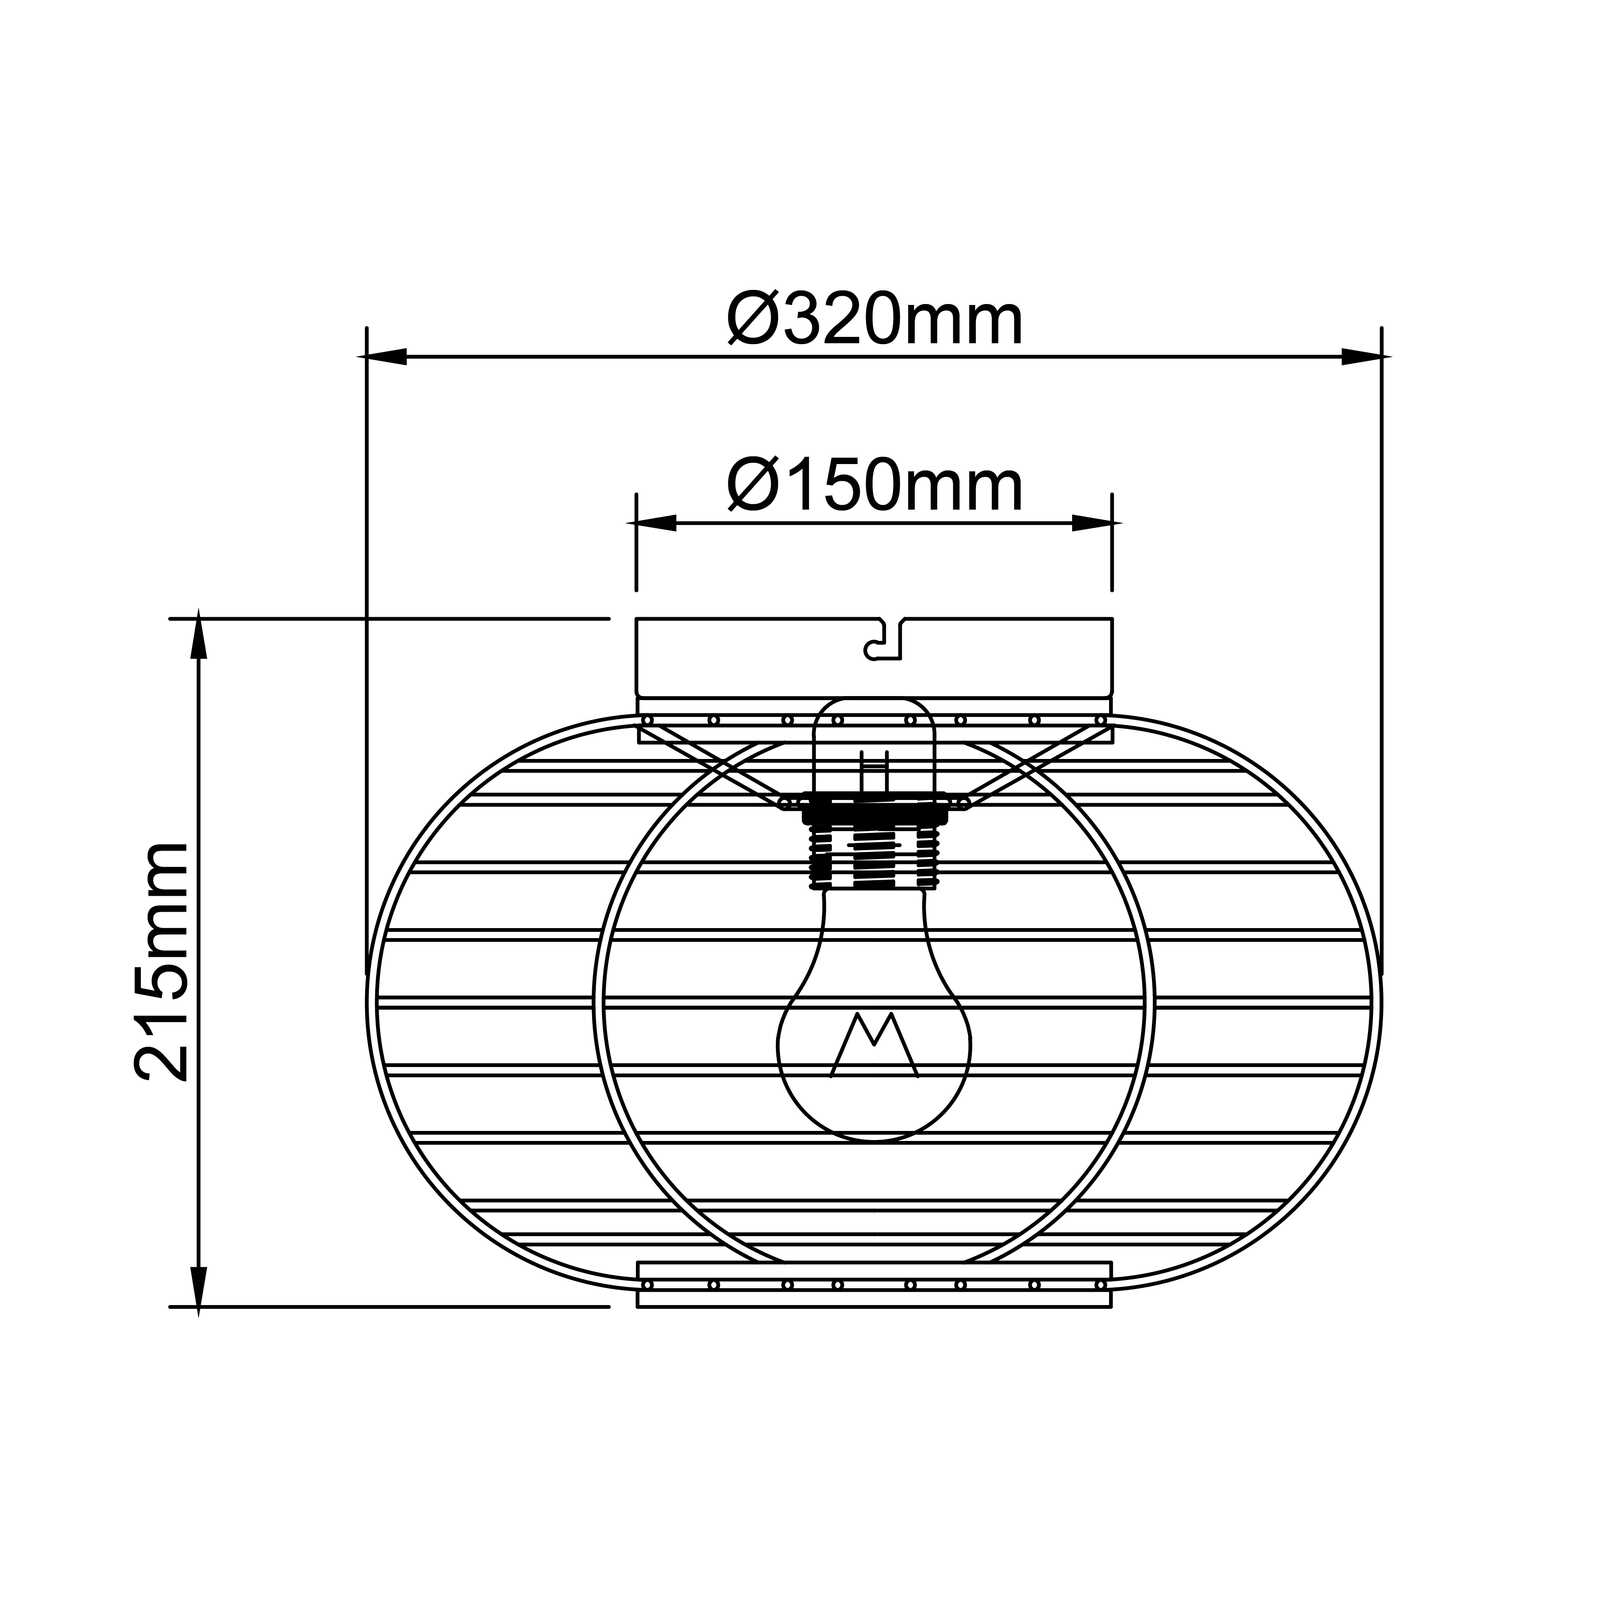             Metalen plafondlamp - Viktor 1 - Bruin
        